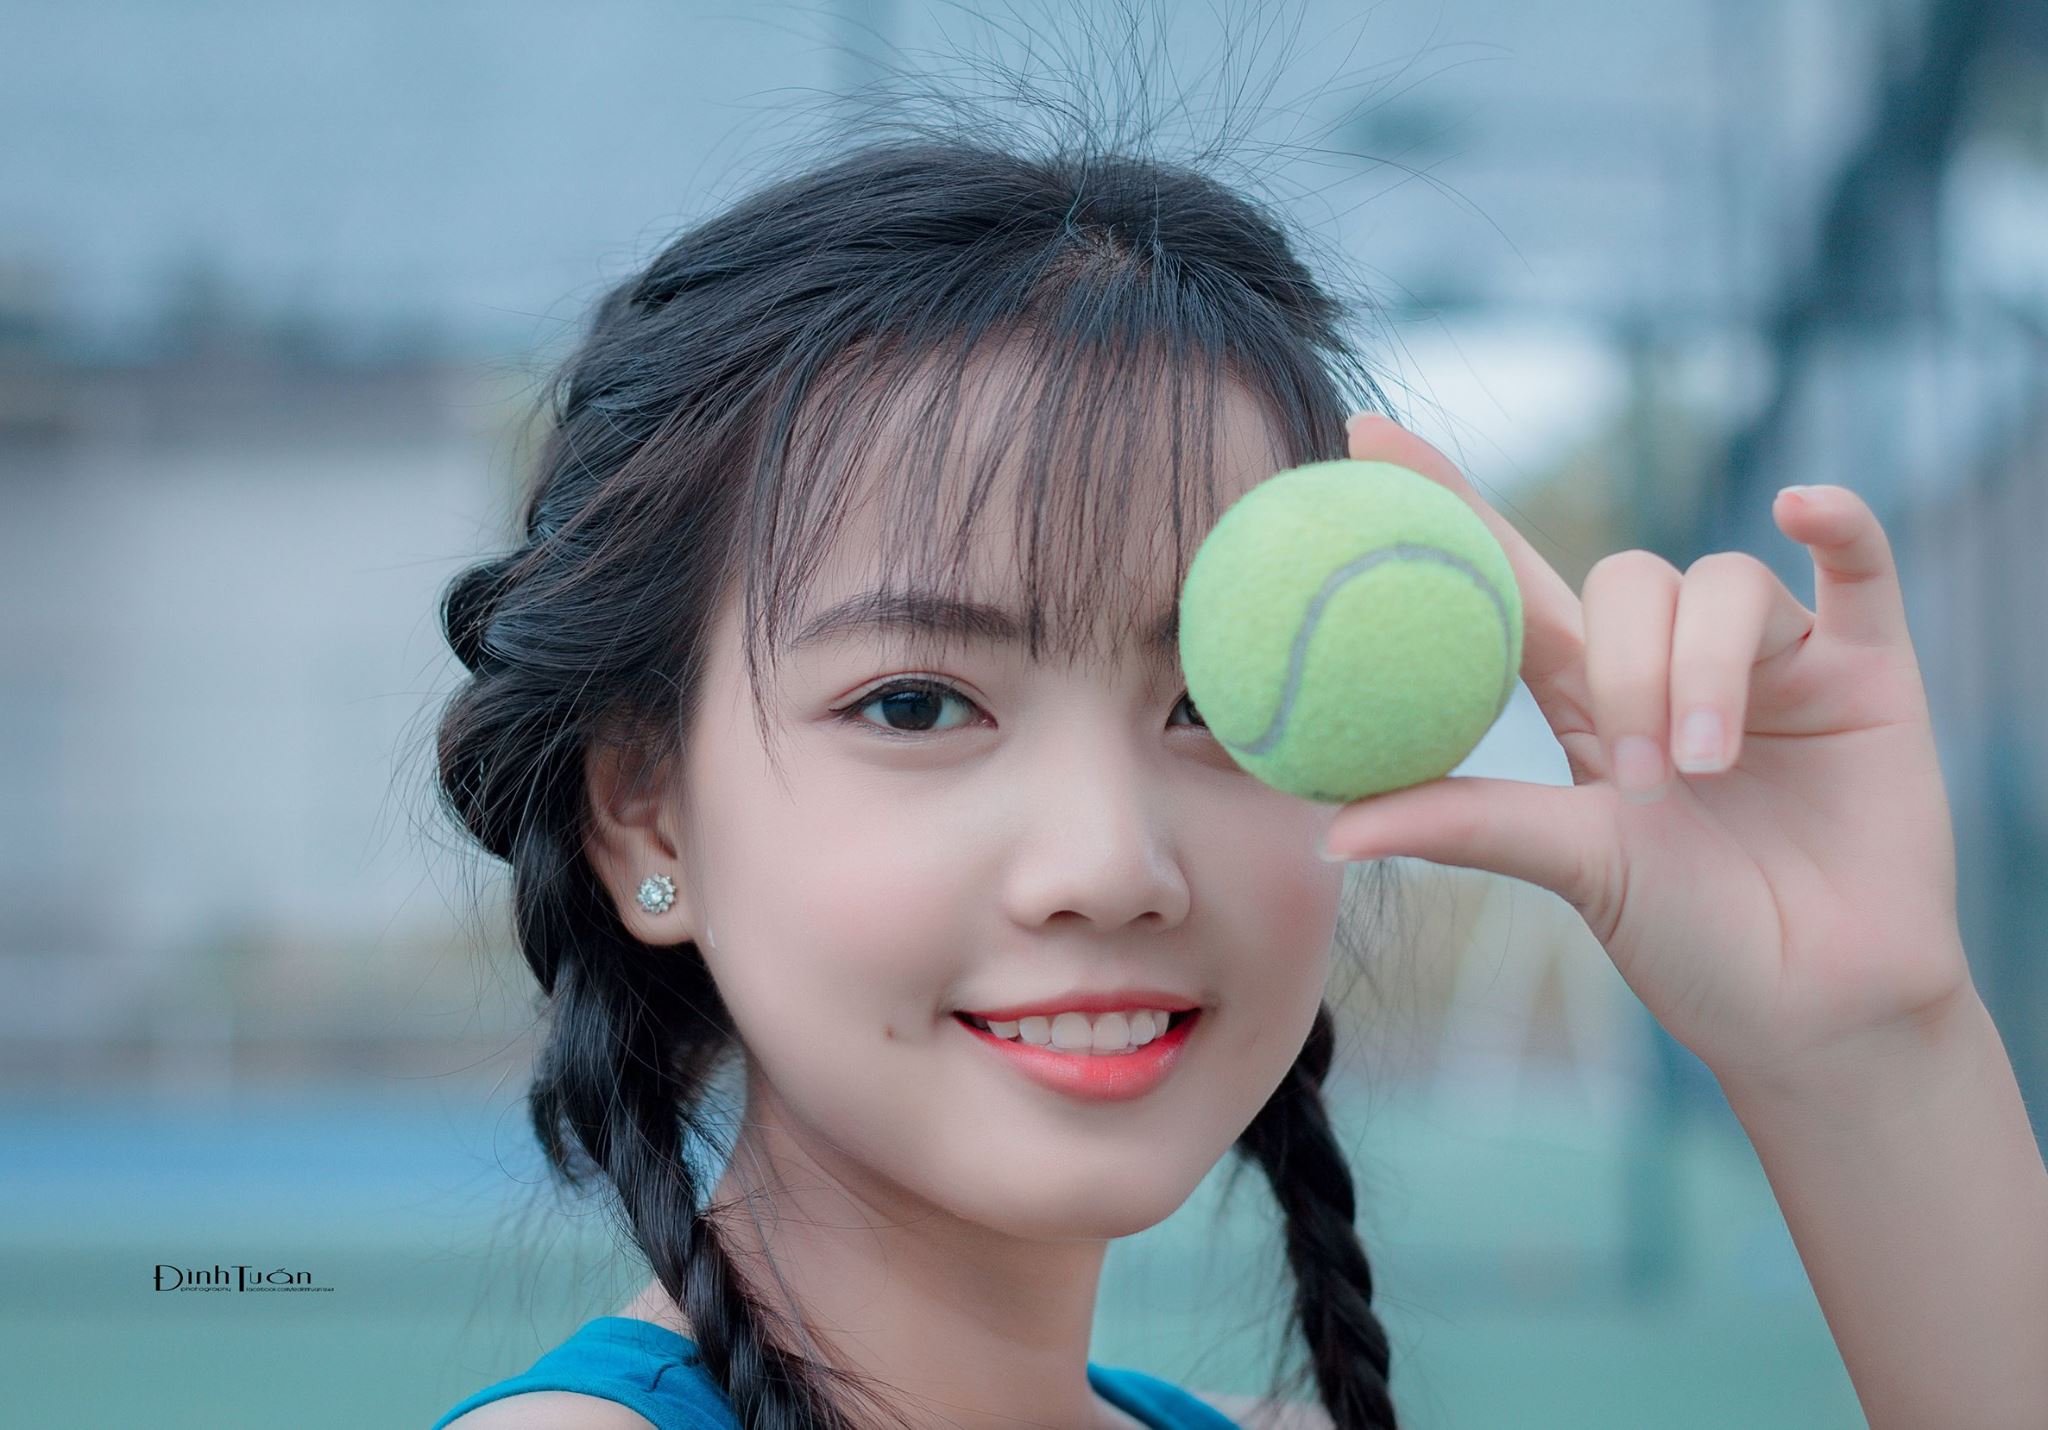 LDTPhotos | Le Dinh Tuan - @ledinhtuan Tennis-2-11 Thư viện ảnh  